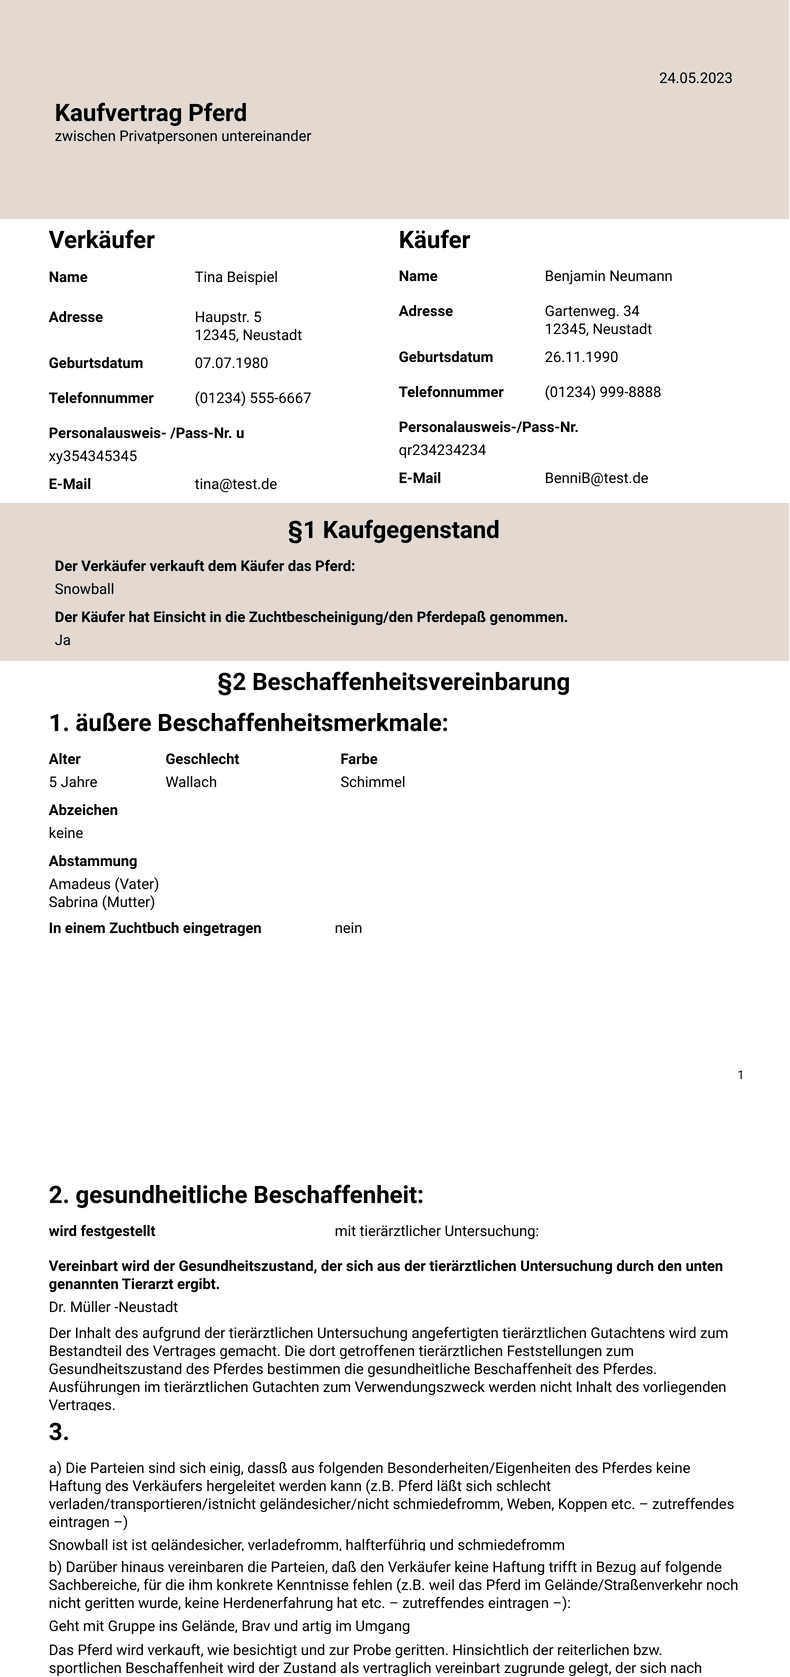 PDF Templates: Kaufvertrag Pferd